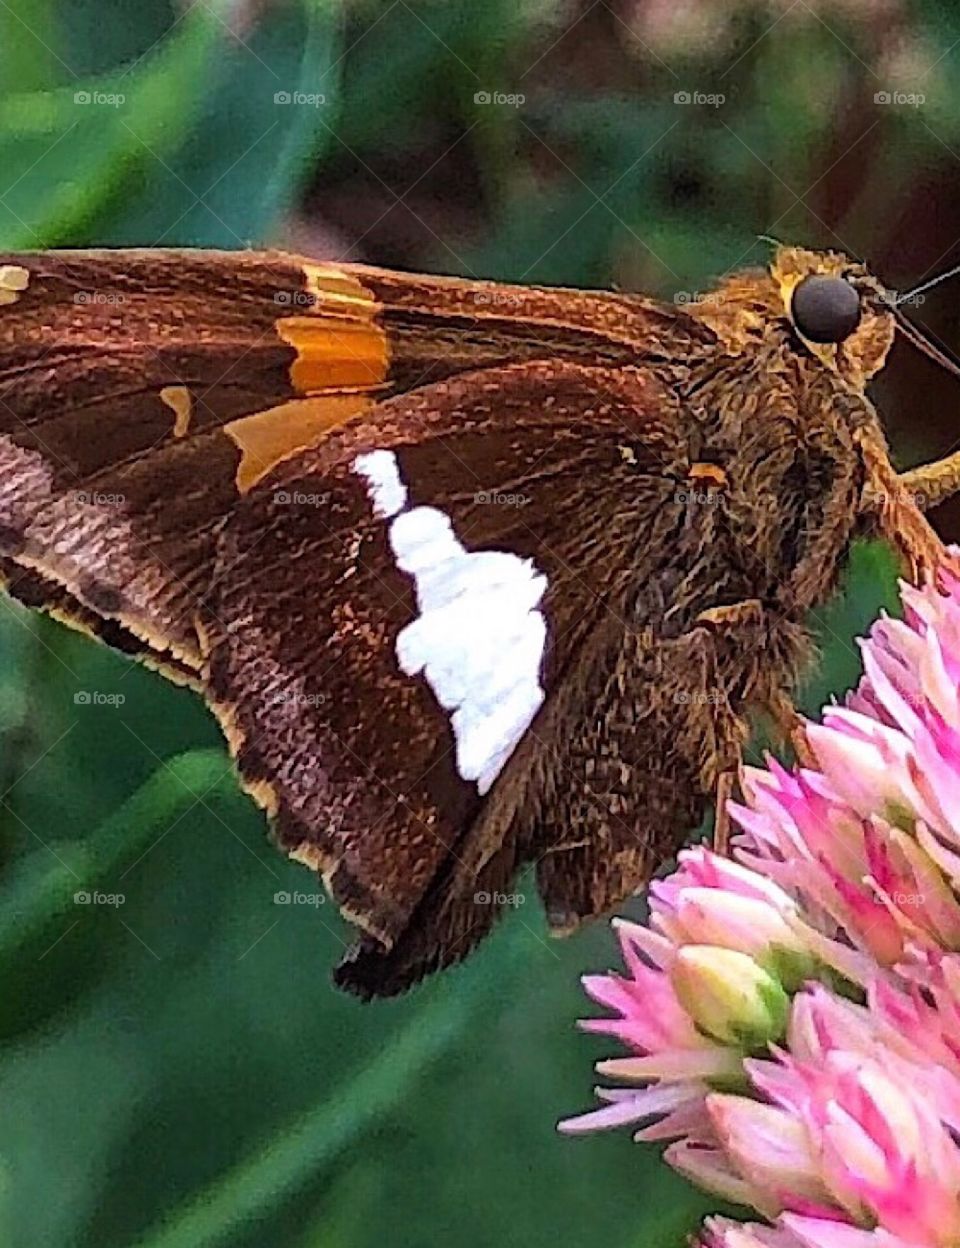 Butterfly resting on a sedum flower summer garden closeup 